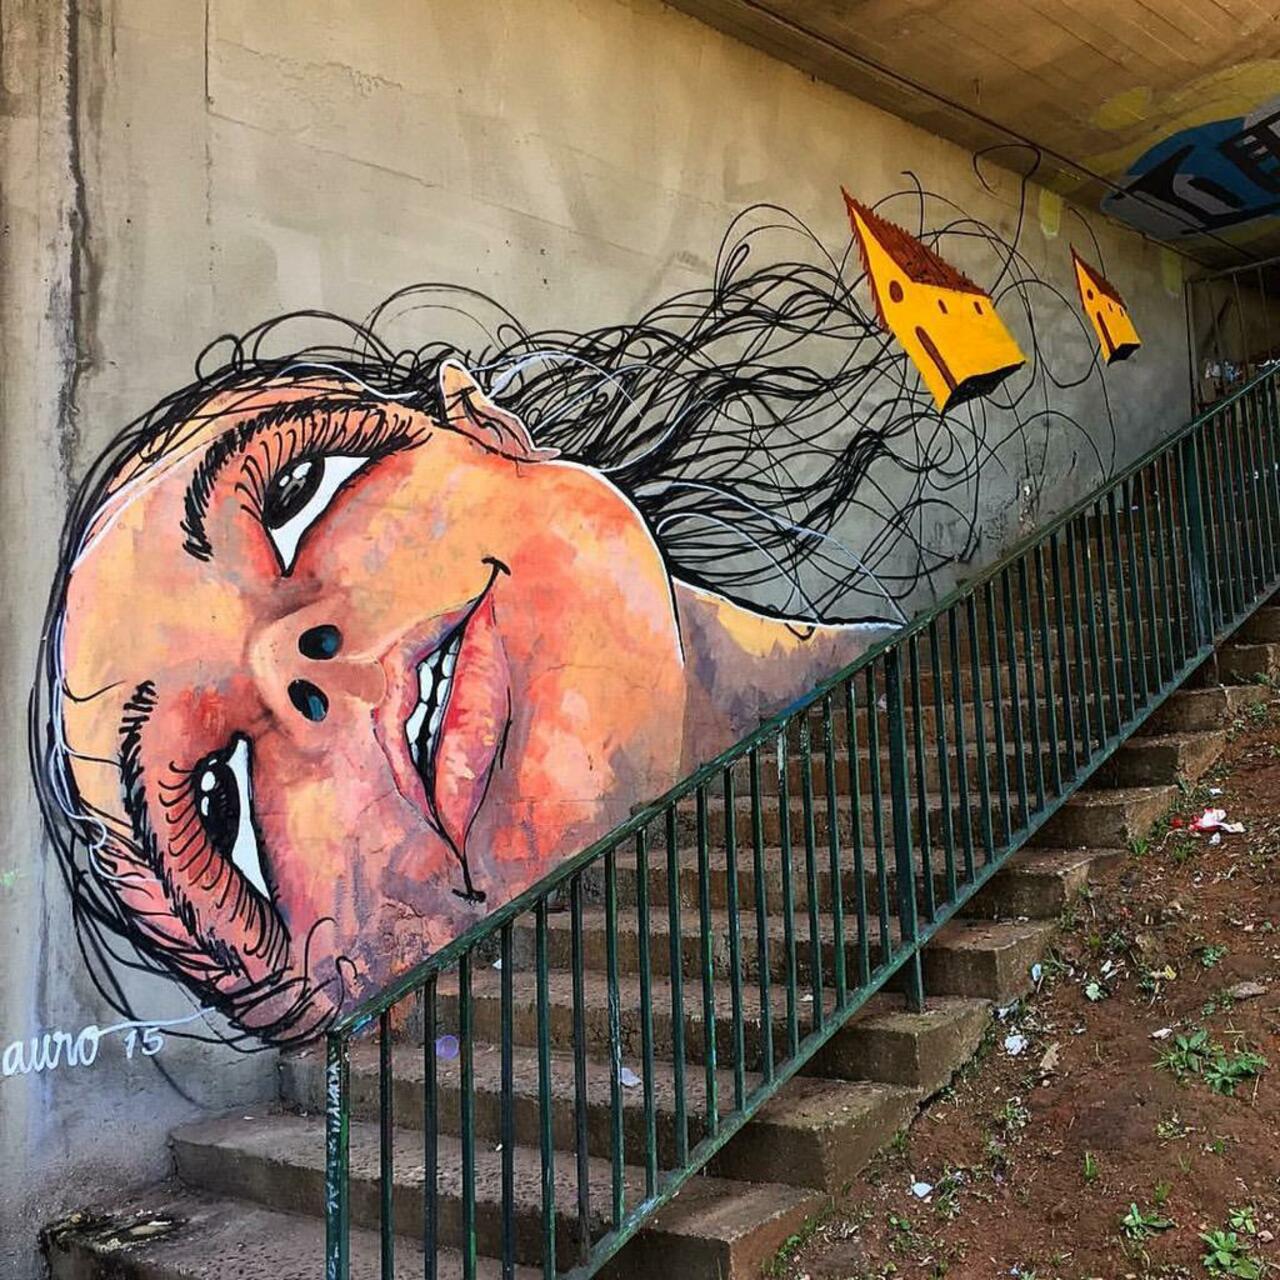 Street Art by Reveracidade in São Paulo 

#art #graffiti #mural #streetart http://t.co/dkEhypmeEG